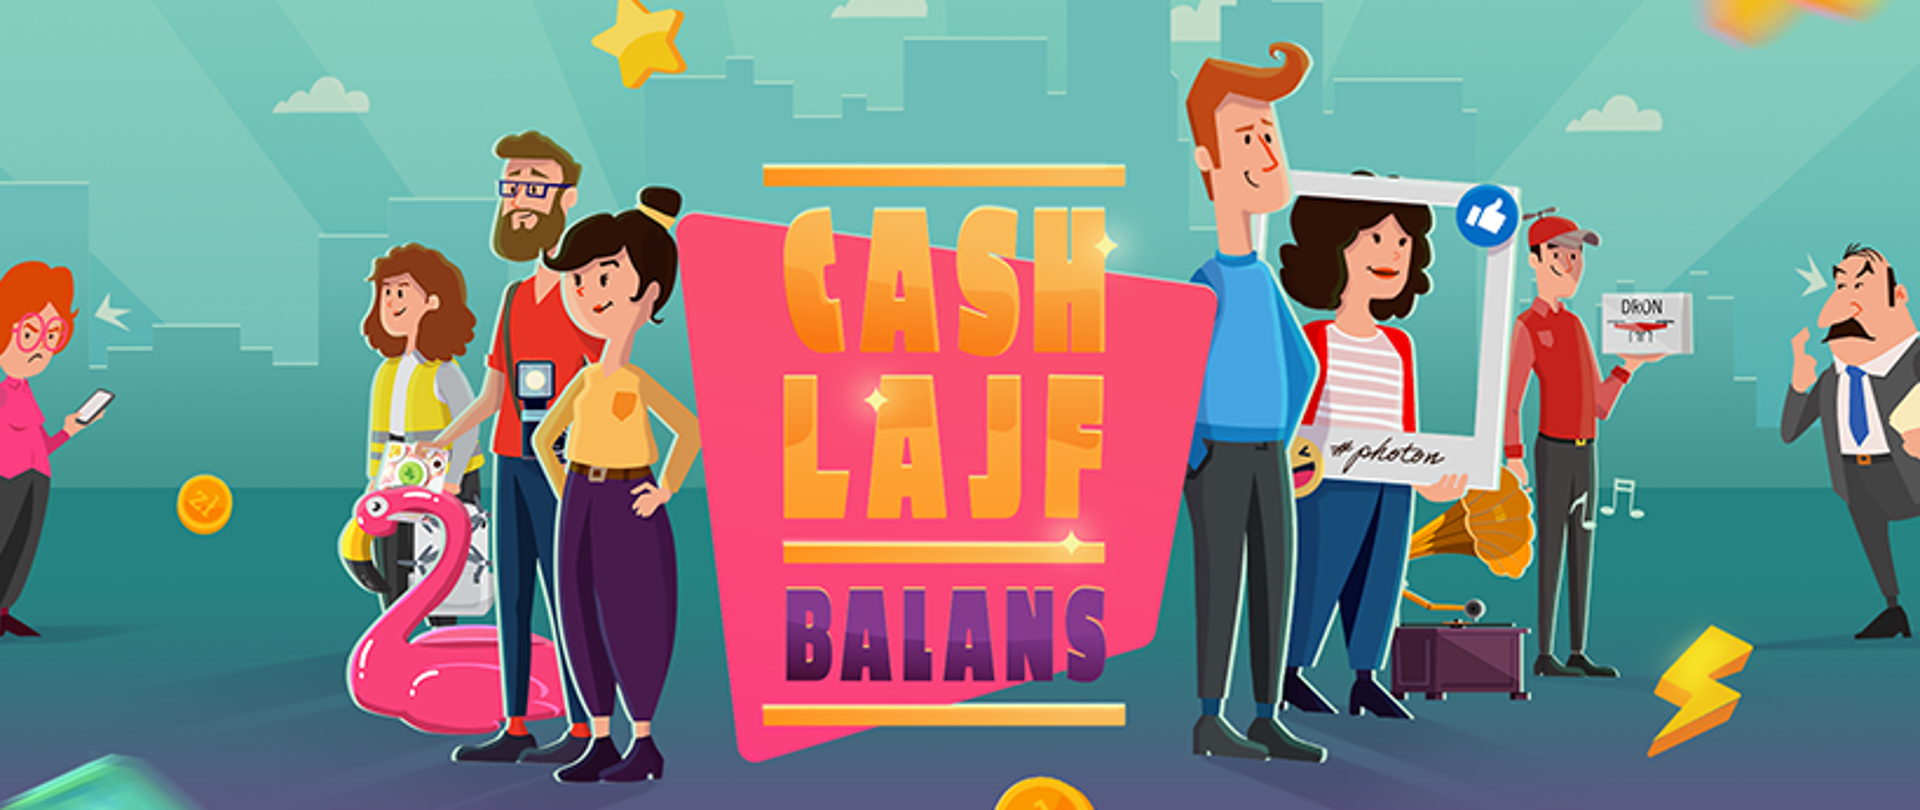 Zdjęcie animowane kampanii Cash Lajf Balans. Nazwa kampania w centralnym punkcie zdjęcia, wokół uśmiechnięci ludzie.